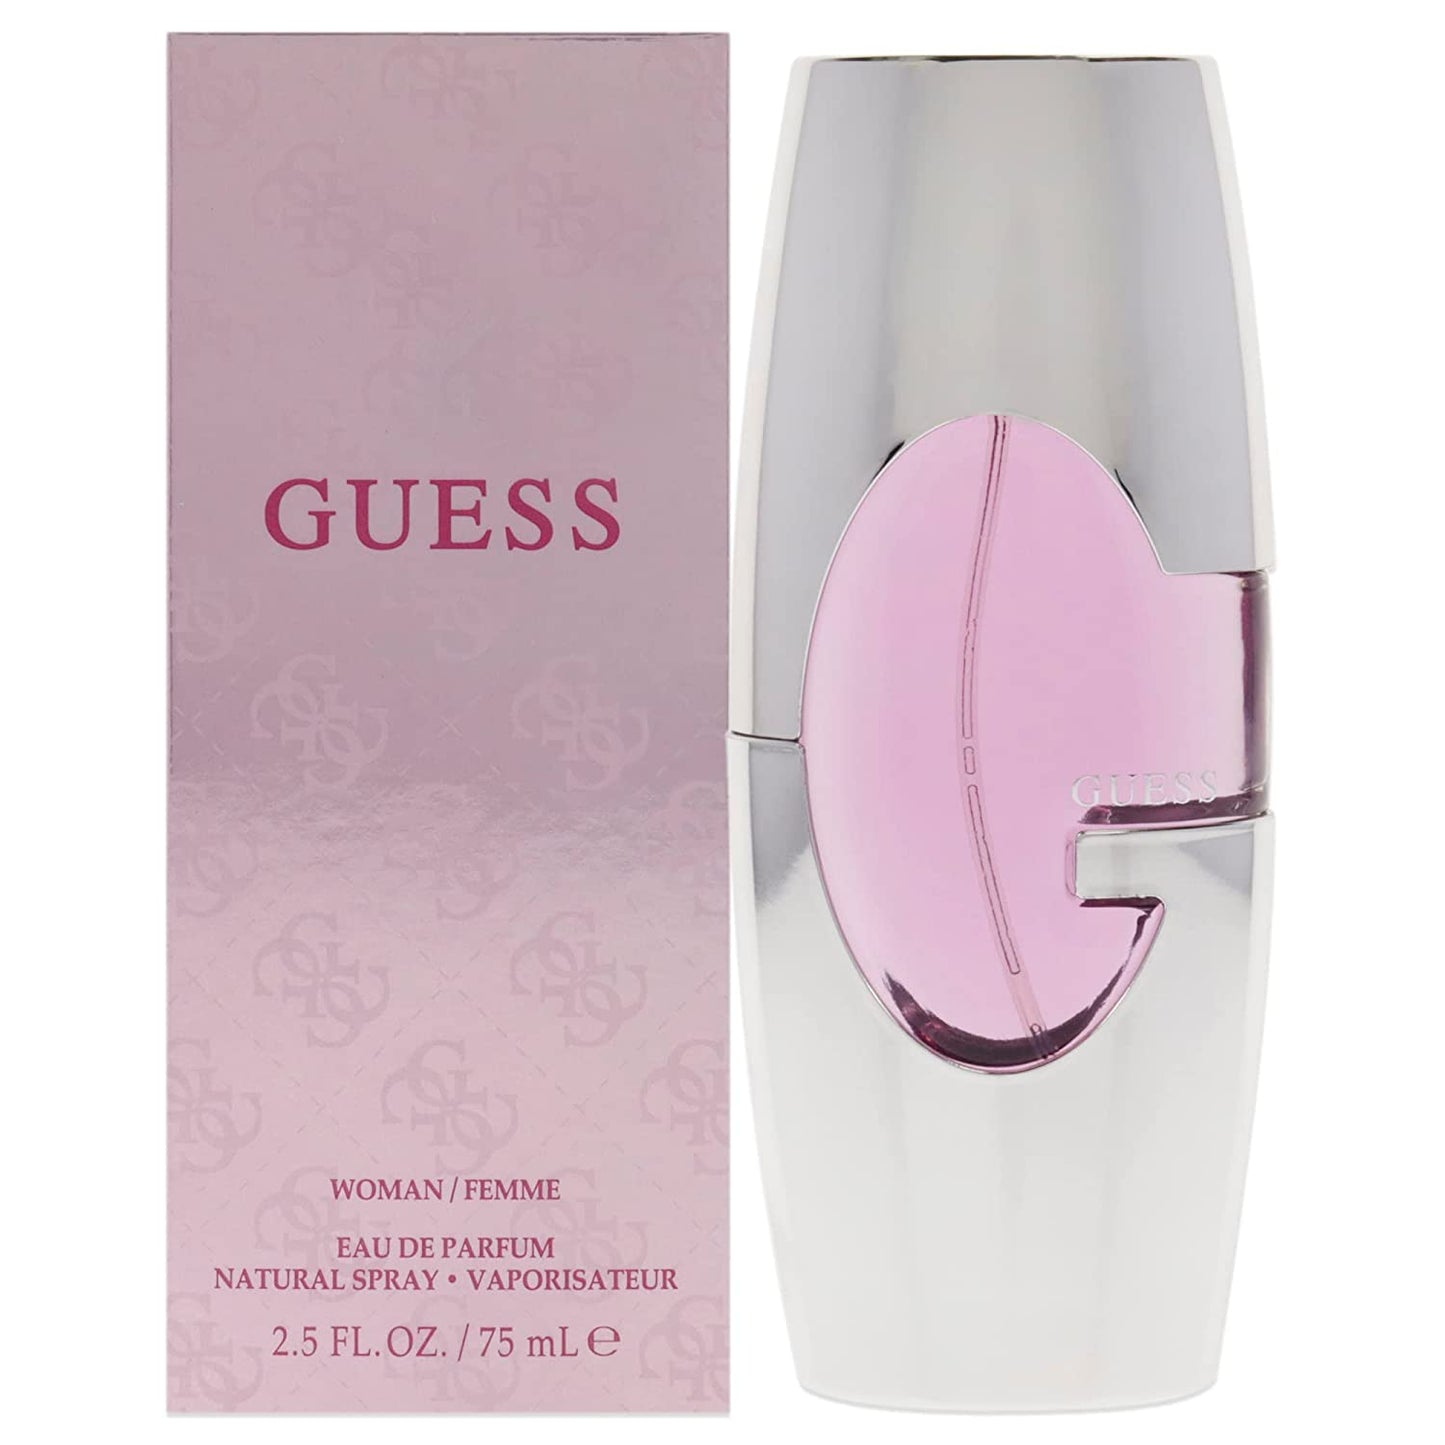 Guess Woman Eau de Parfum 2.5 oz / 75 ml